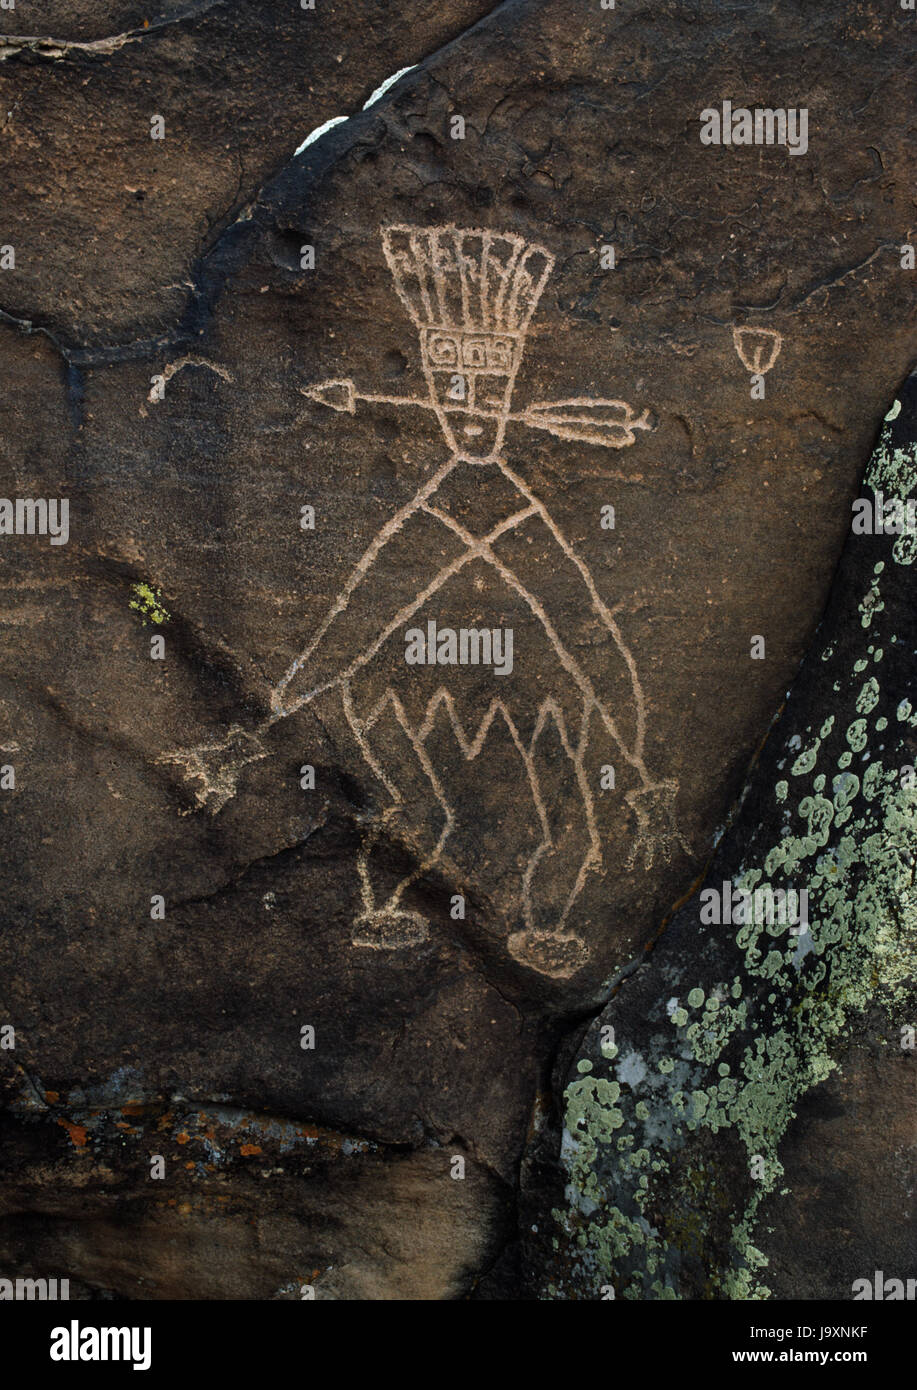 Pueblo cerimoniale di figura vicino a San Christobal, Bacino di Galisteo, Nuovo Messico, Stati Uniti d'America: probabilmente rappresenta un membro della freccia (o stick) società di deglutizione Foto Stock